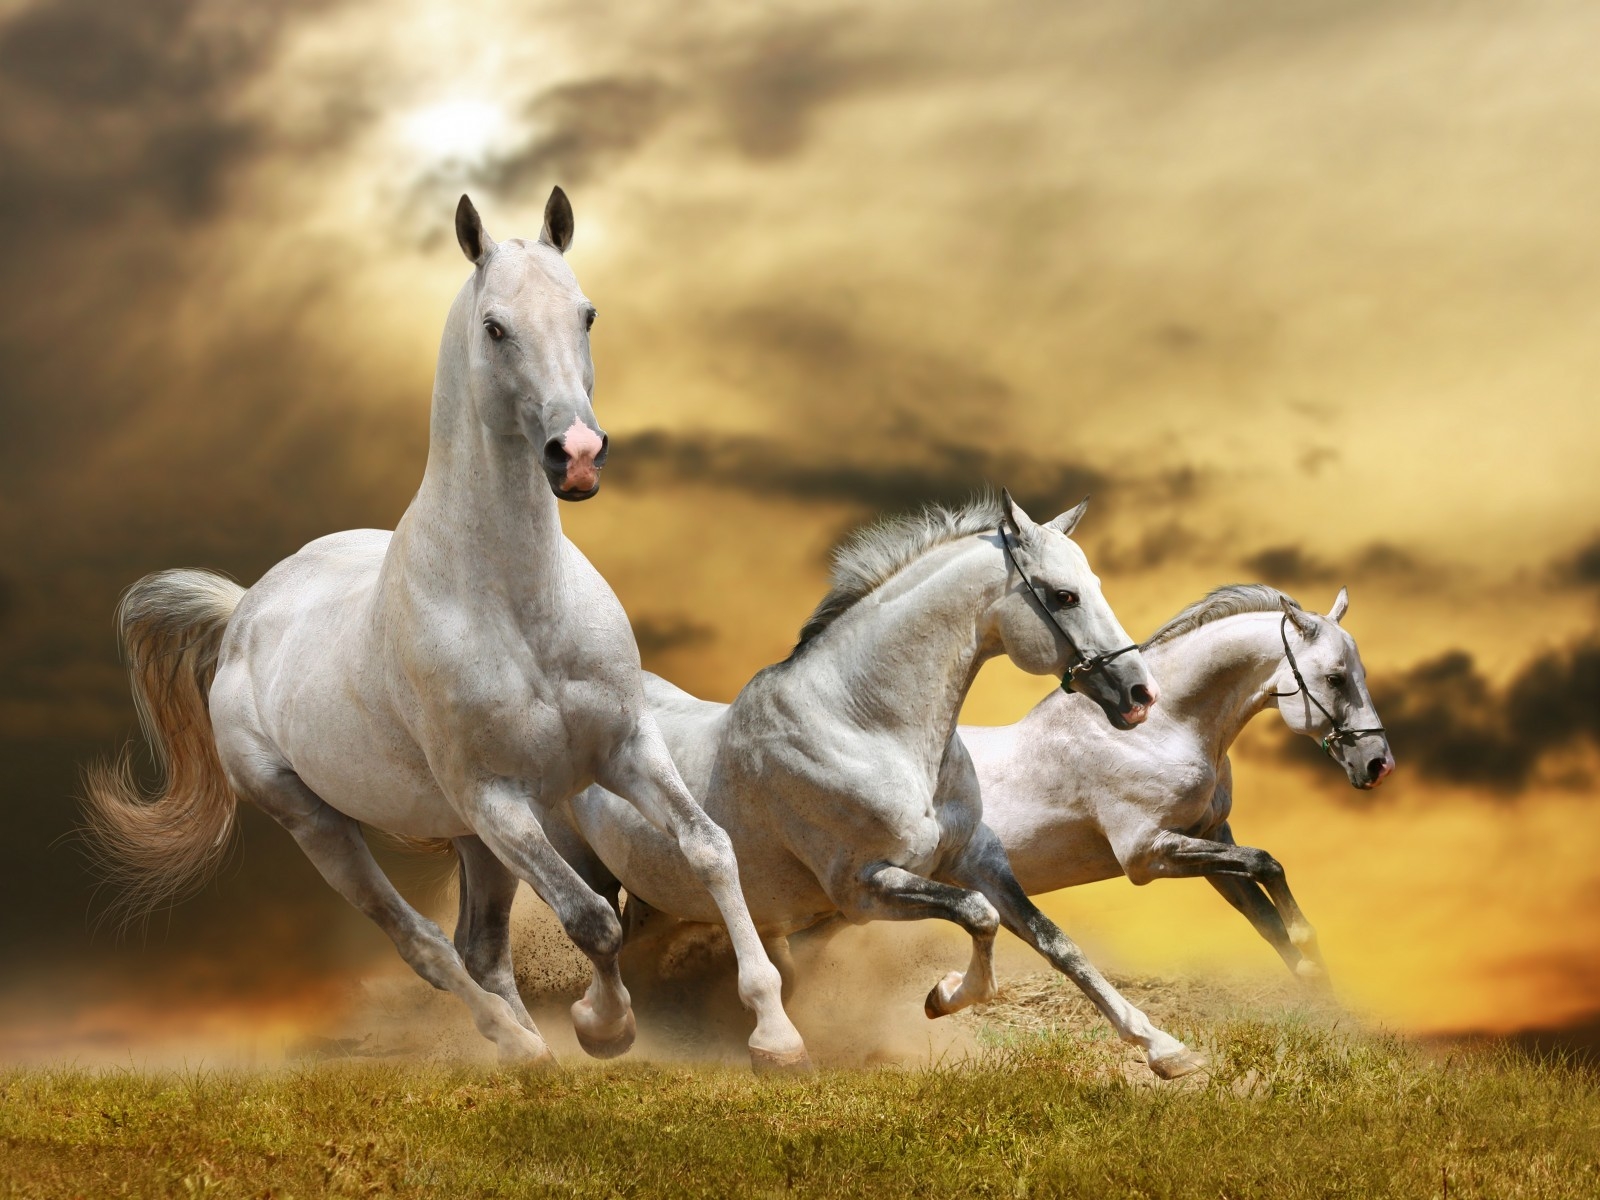 Wilde White Horses for 1600 x 1200 resolution